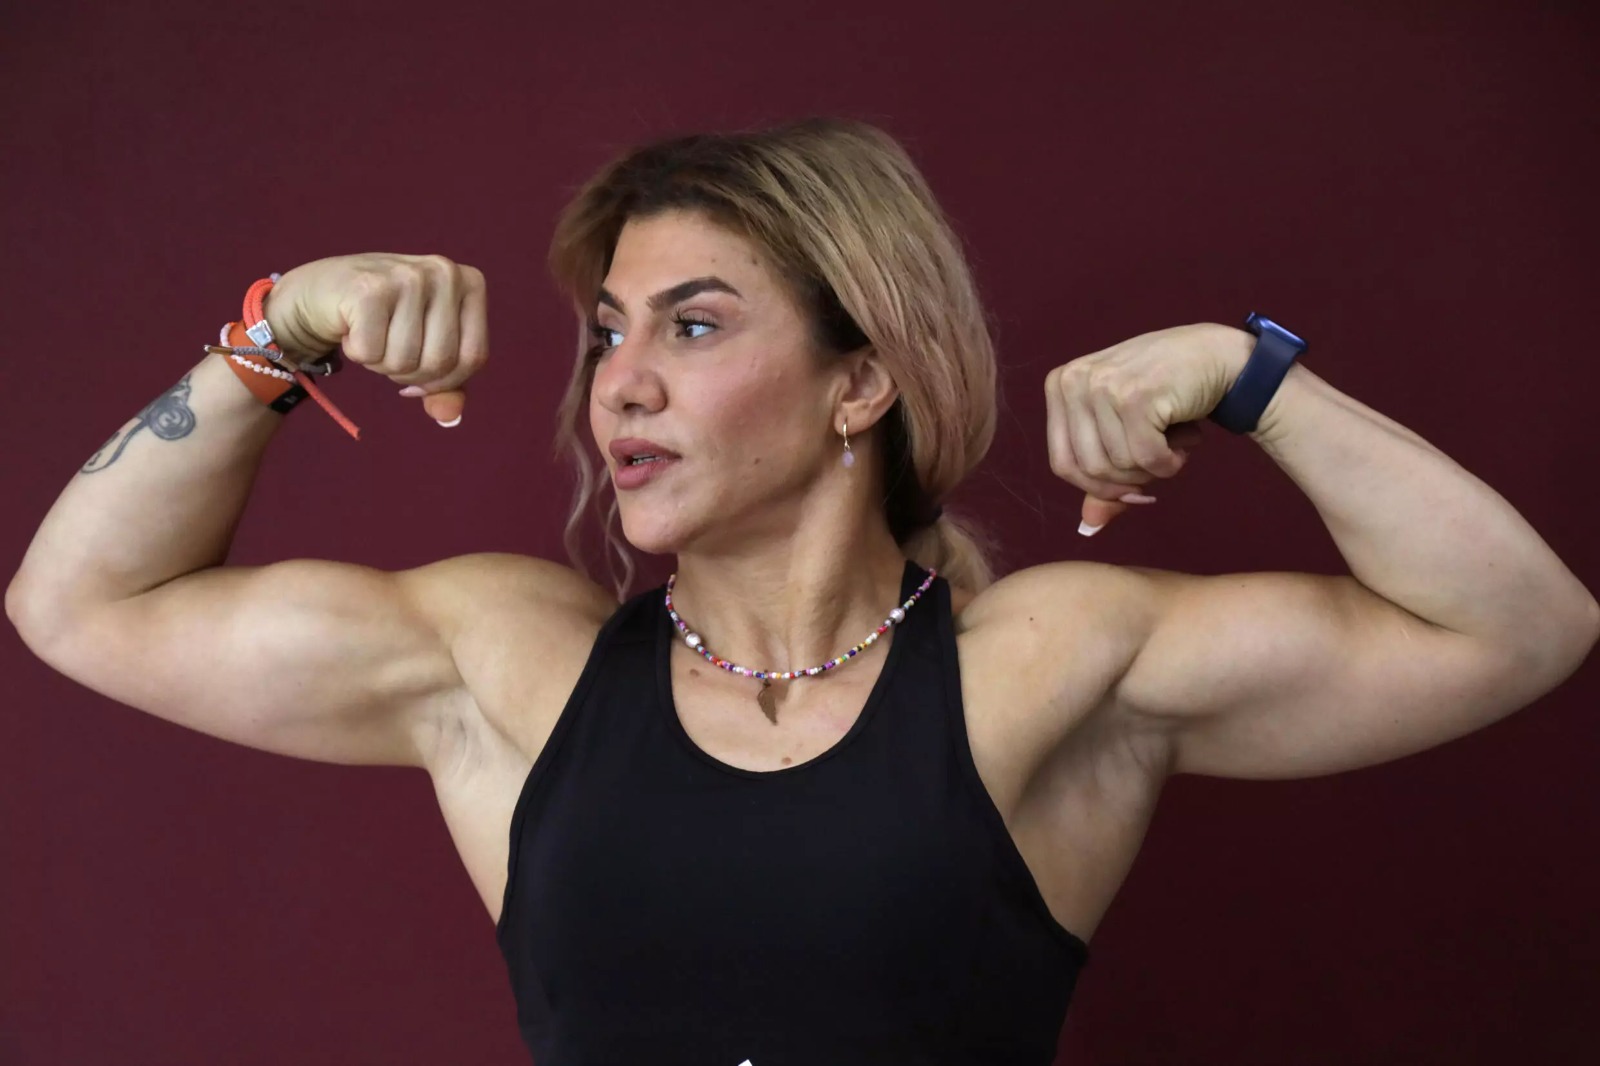 في أربيل.. امرأة كوردية تختار رياضة "ذكورية" لتشجيع المساواة بين الجنسين (صور)